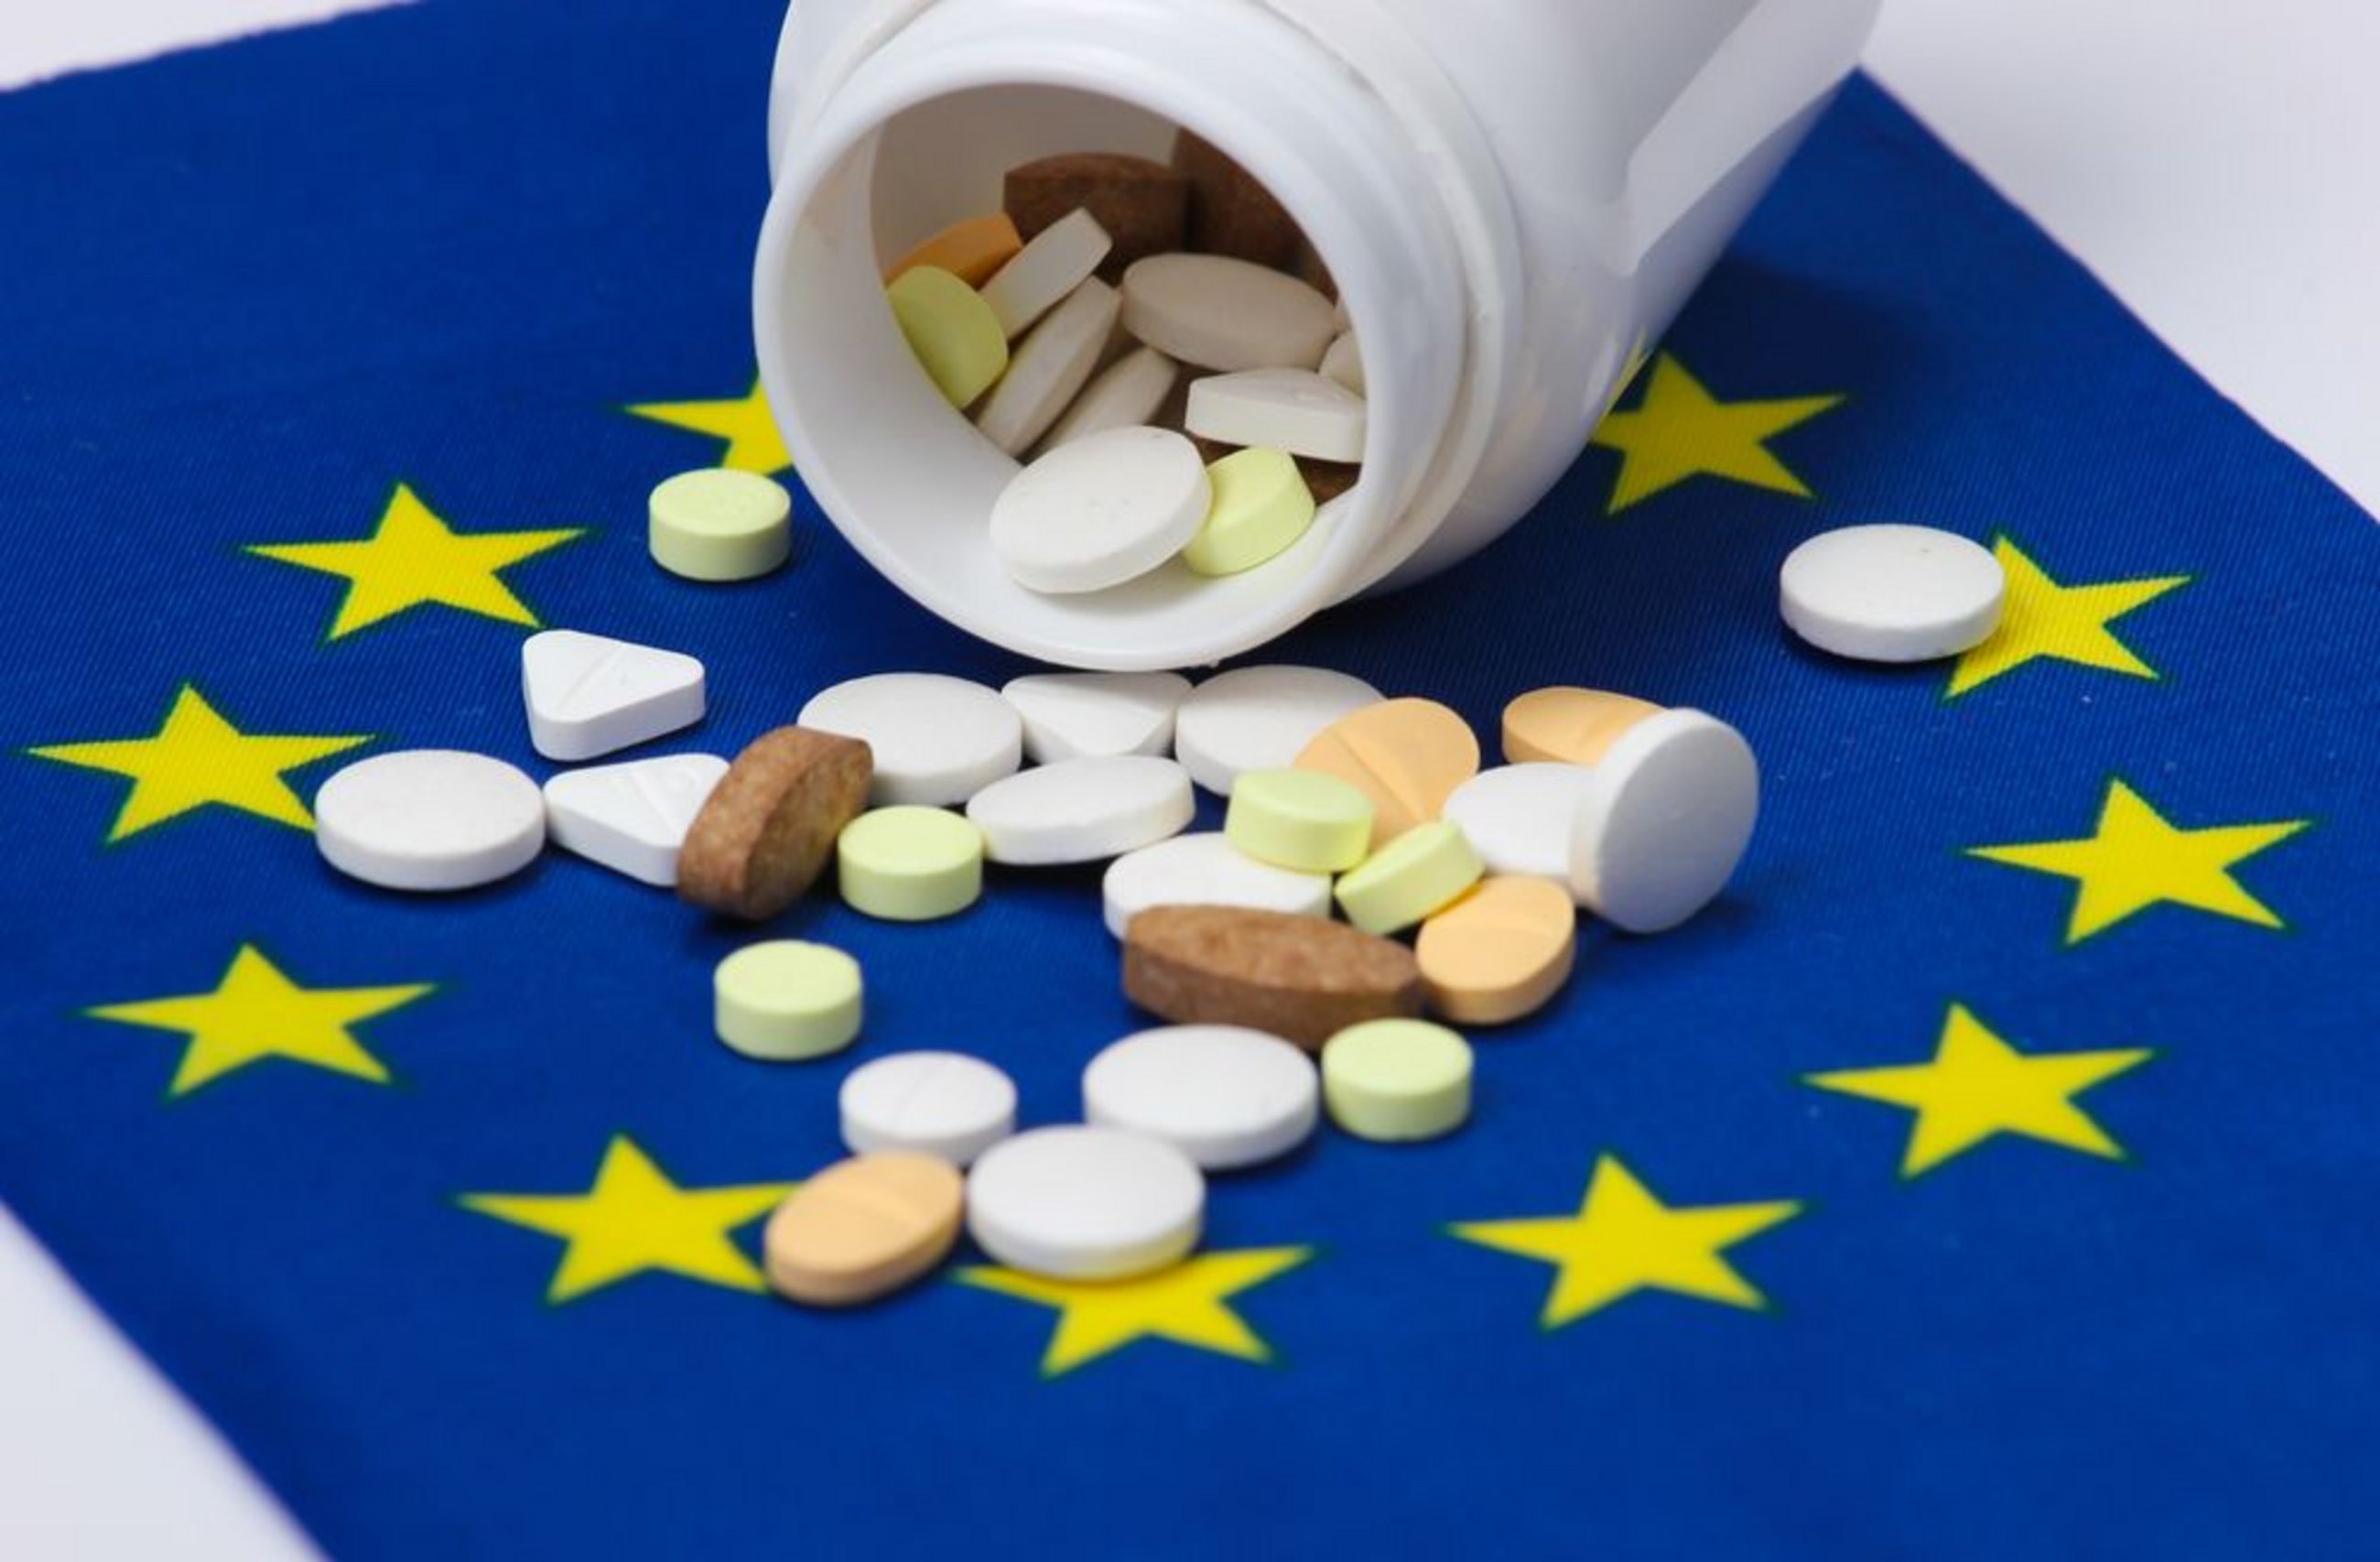 Réforme pharmaceutique : le cep reproche à la Commission d'avoir outrepassé ses compétences